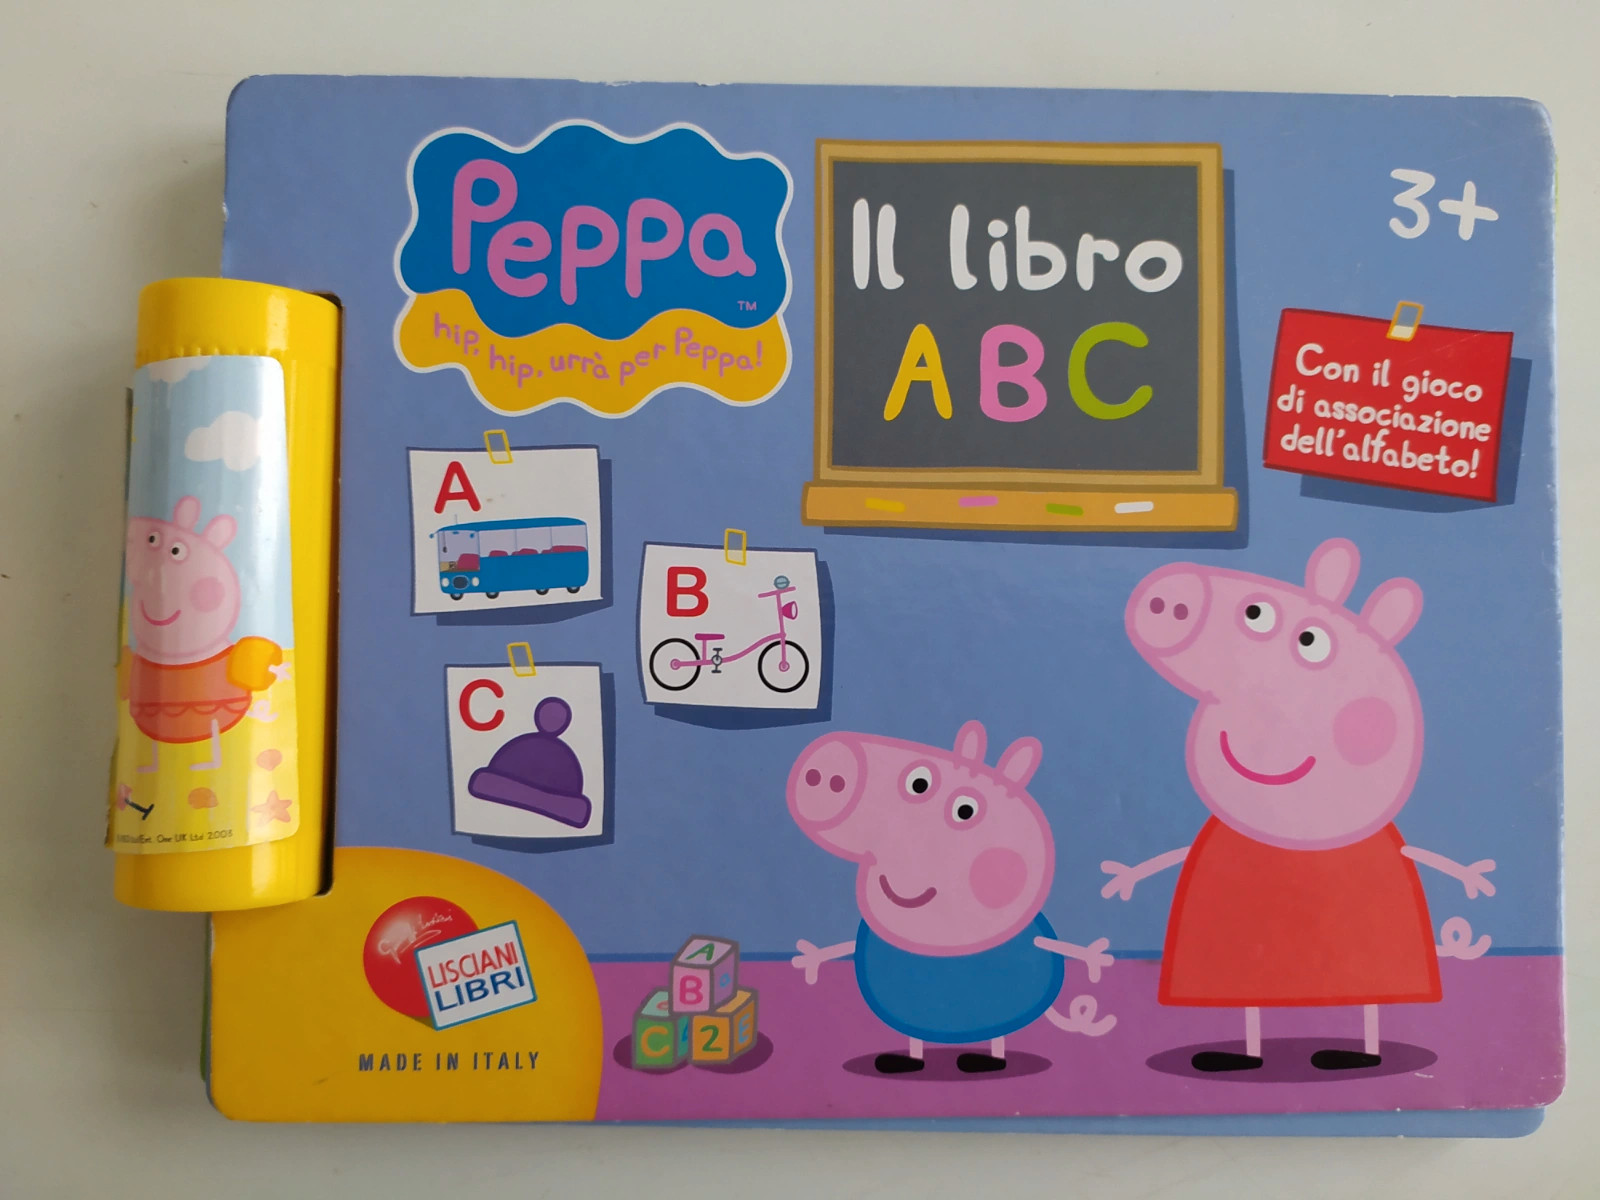 Libro cartonato Peppa Pig, anni 3+, Il libro ABC. Lisciani libri